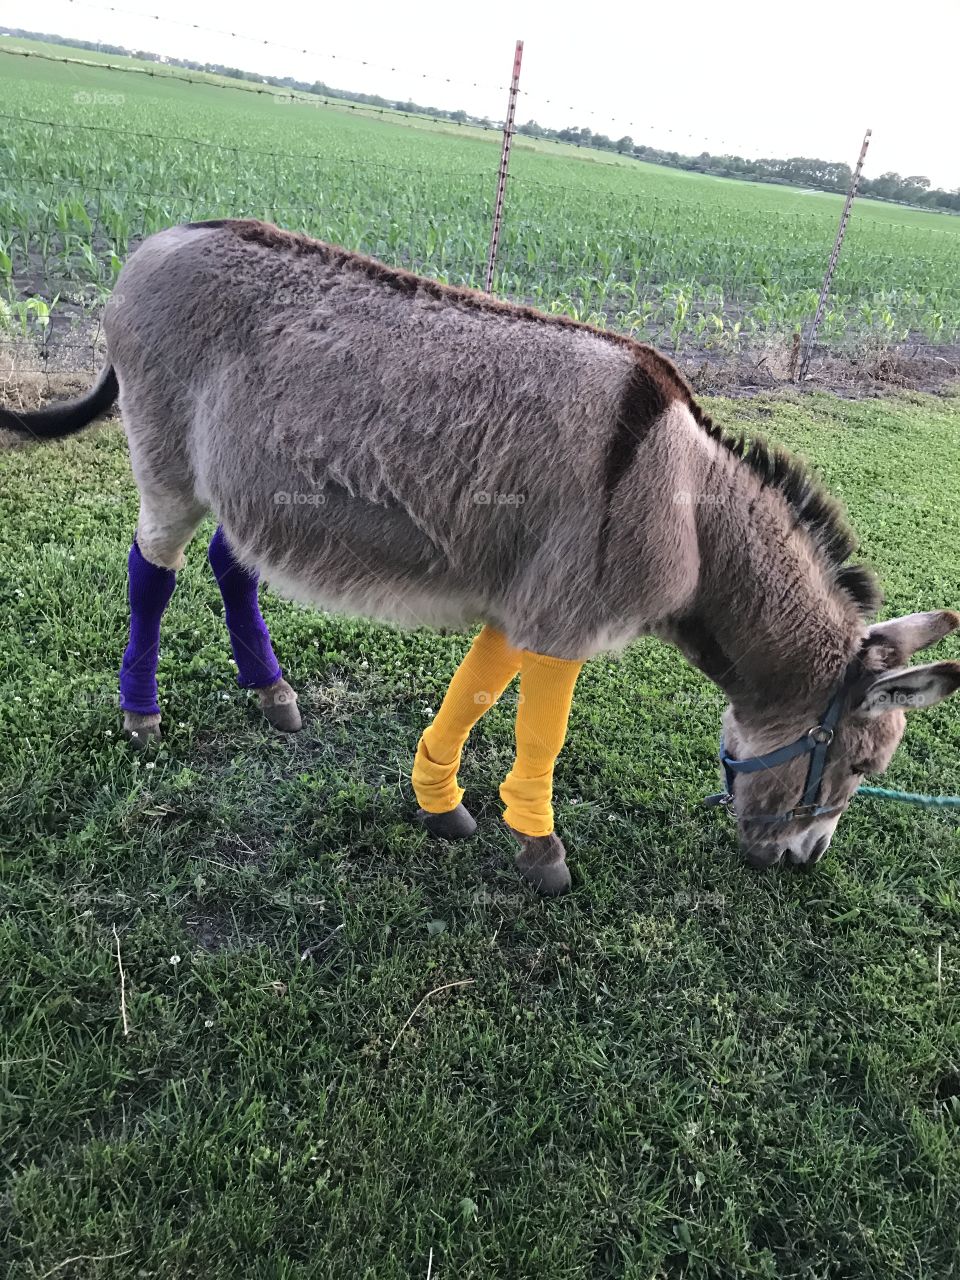 Donkey in socks! 🙃